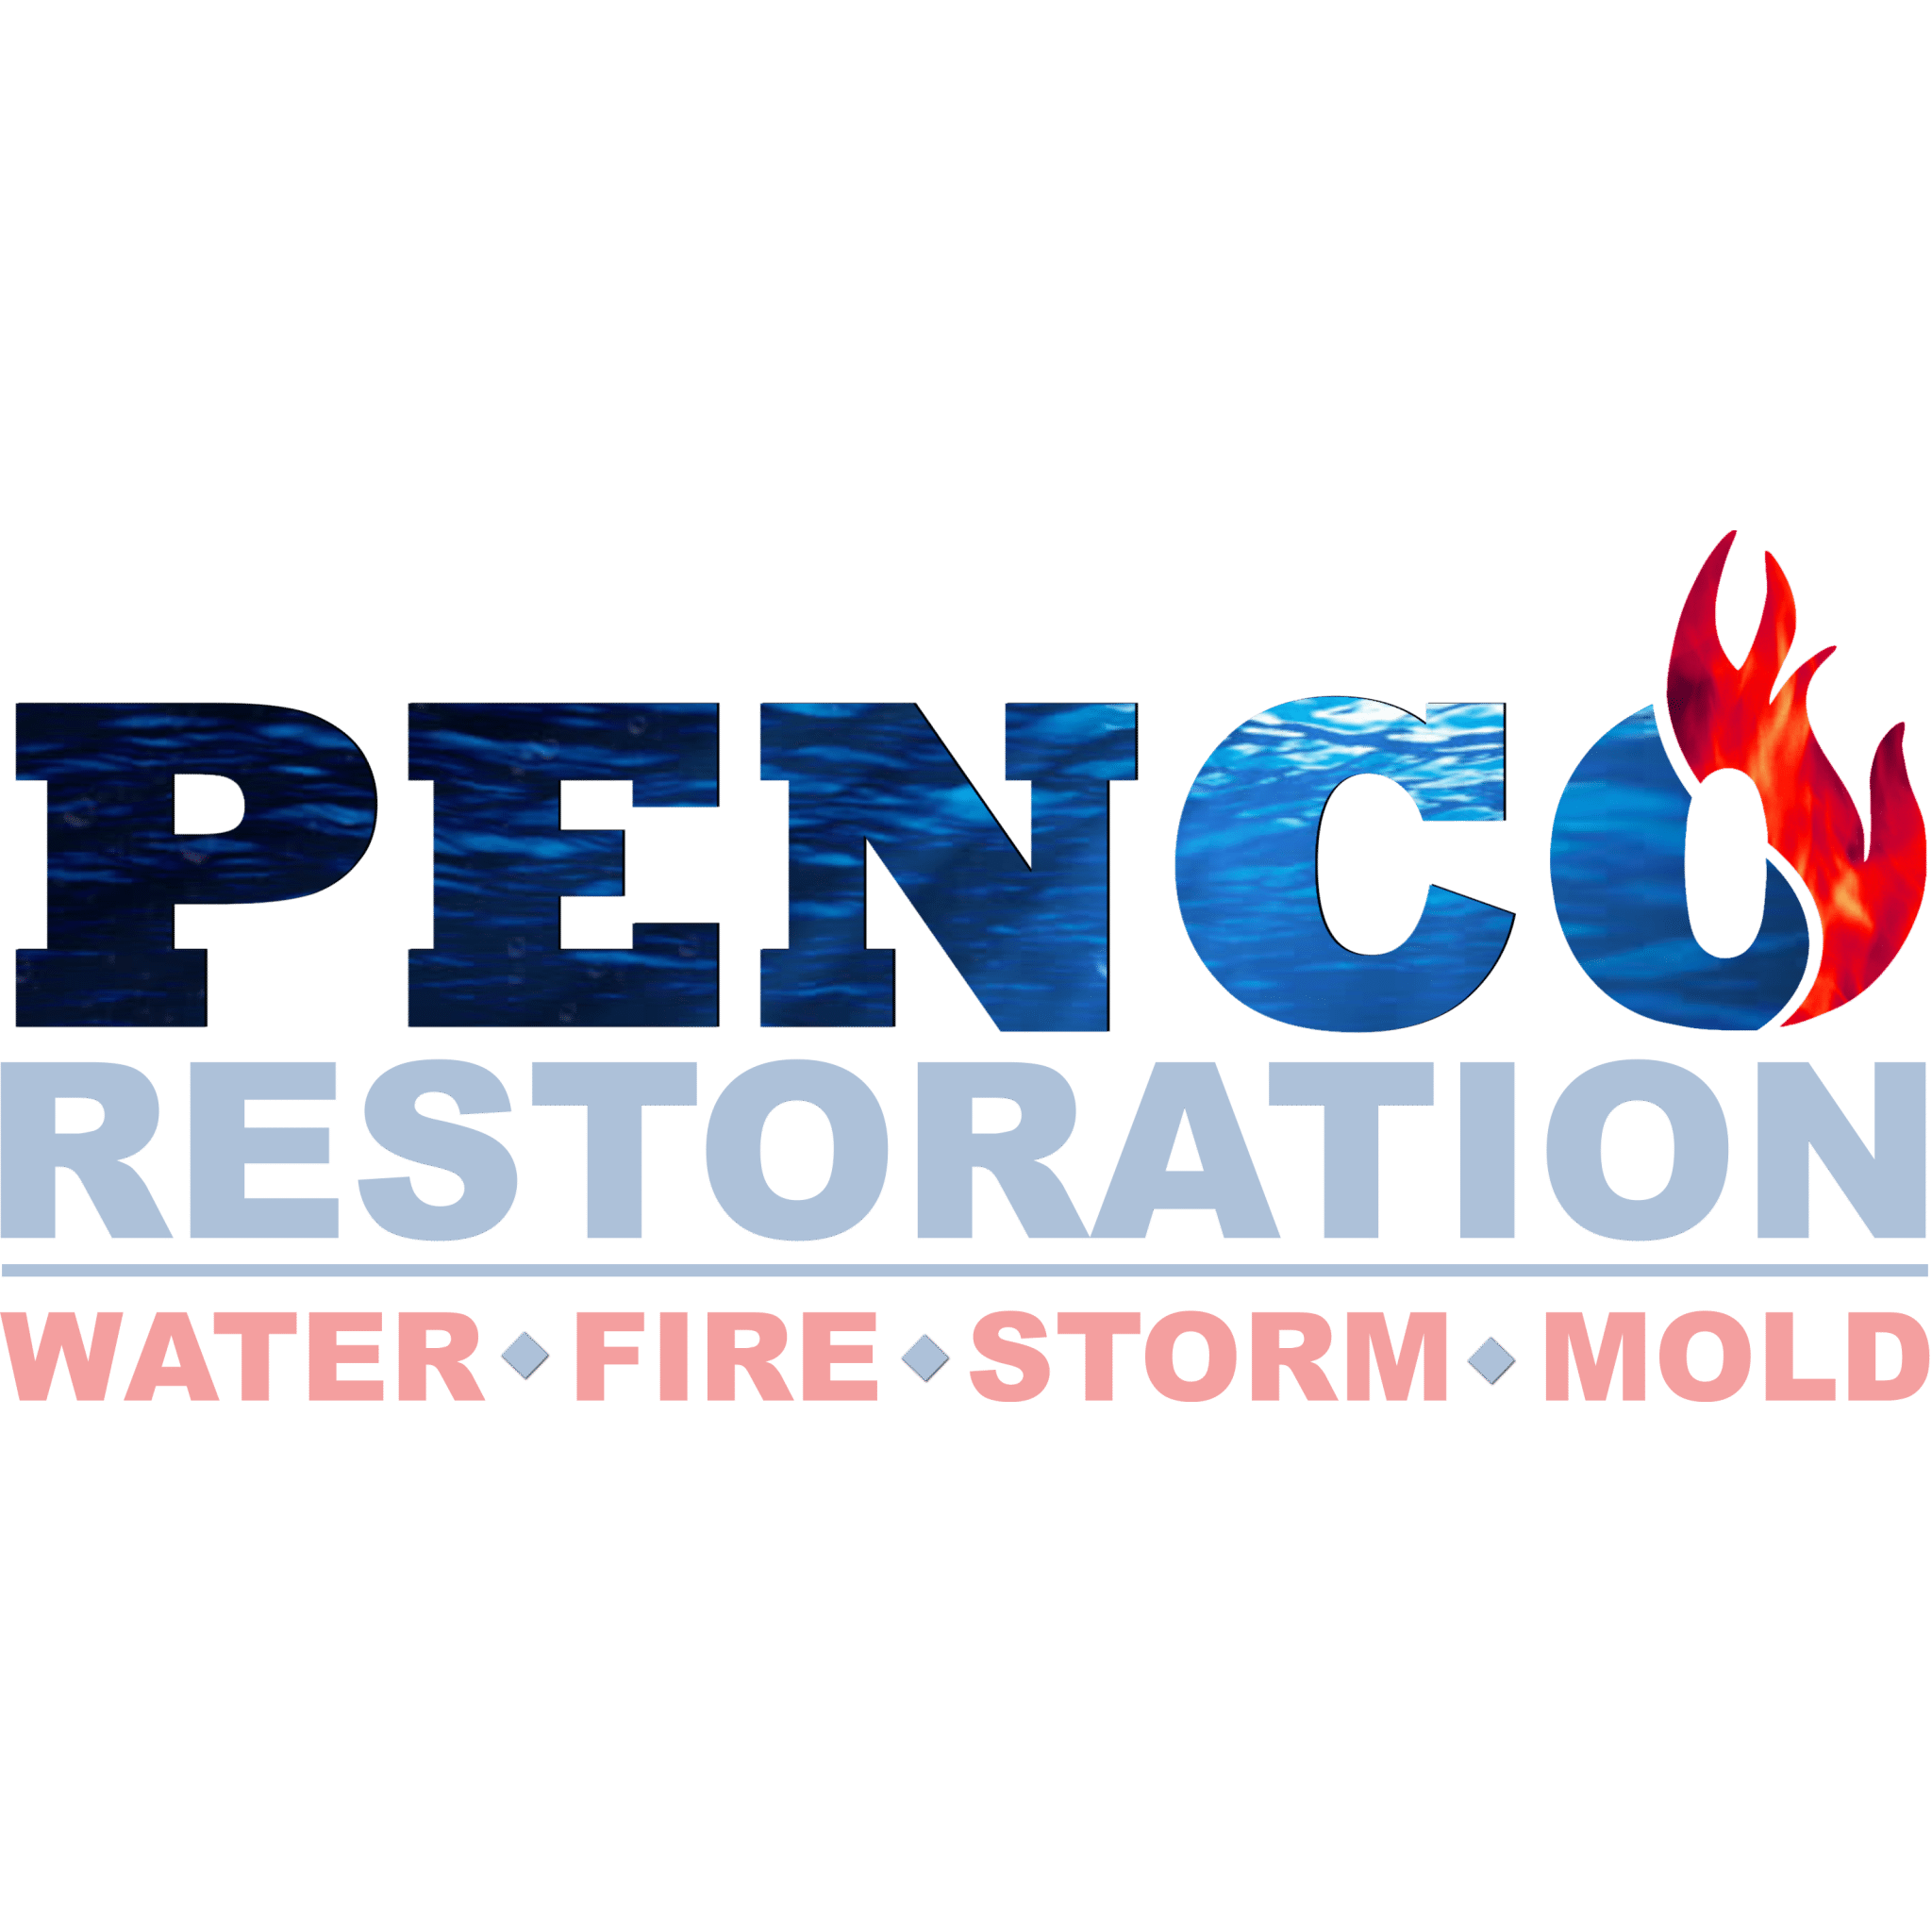 Penco Restoration Northeast, GA - Hoschton, GA 30548 - (706)813-3800 | ShowMeLocal.com